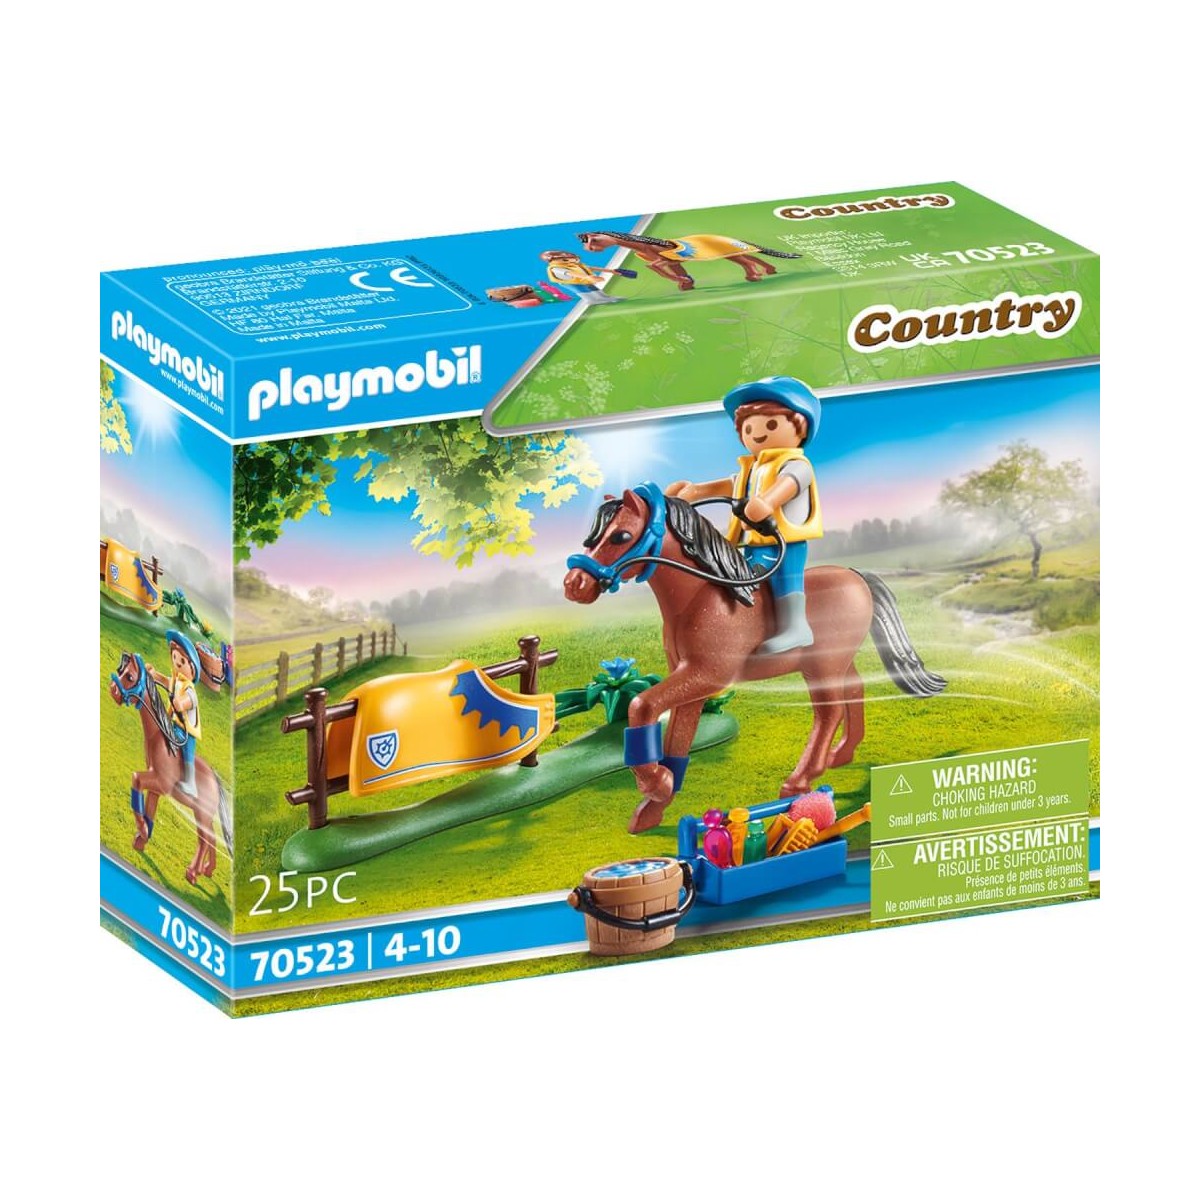 poney club playmobil - Lilo  Playmobil, Play mobile, Kinder spielzeug